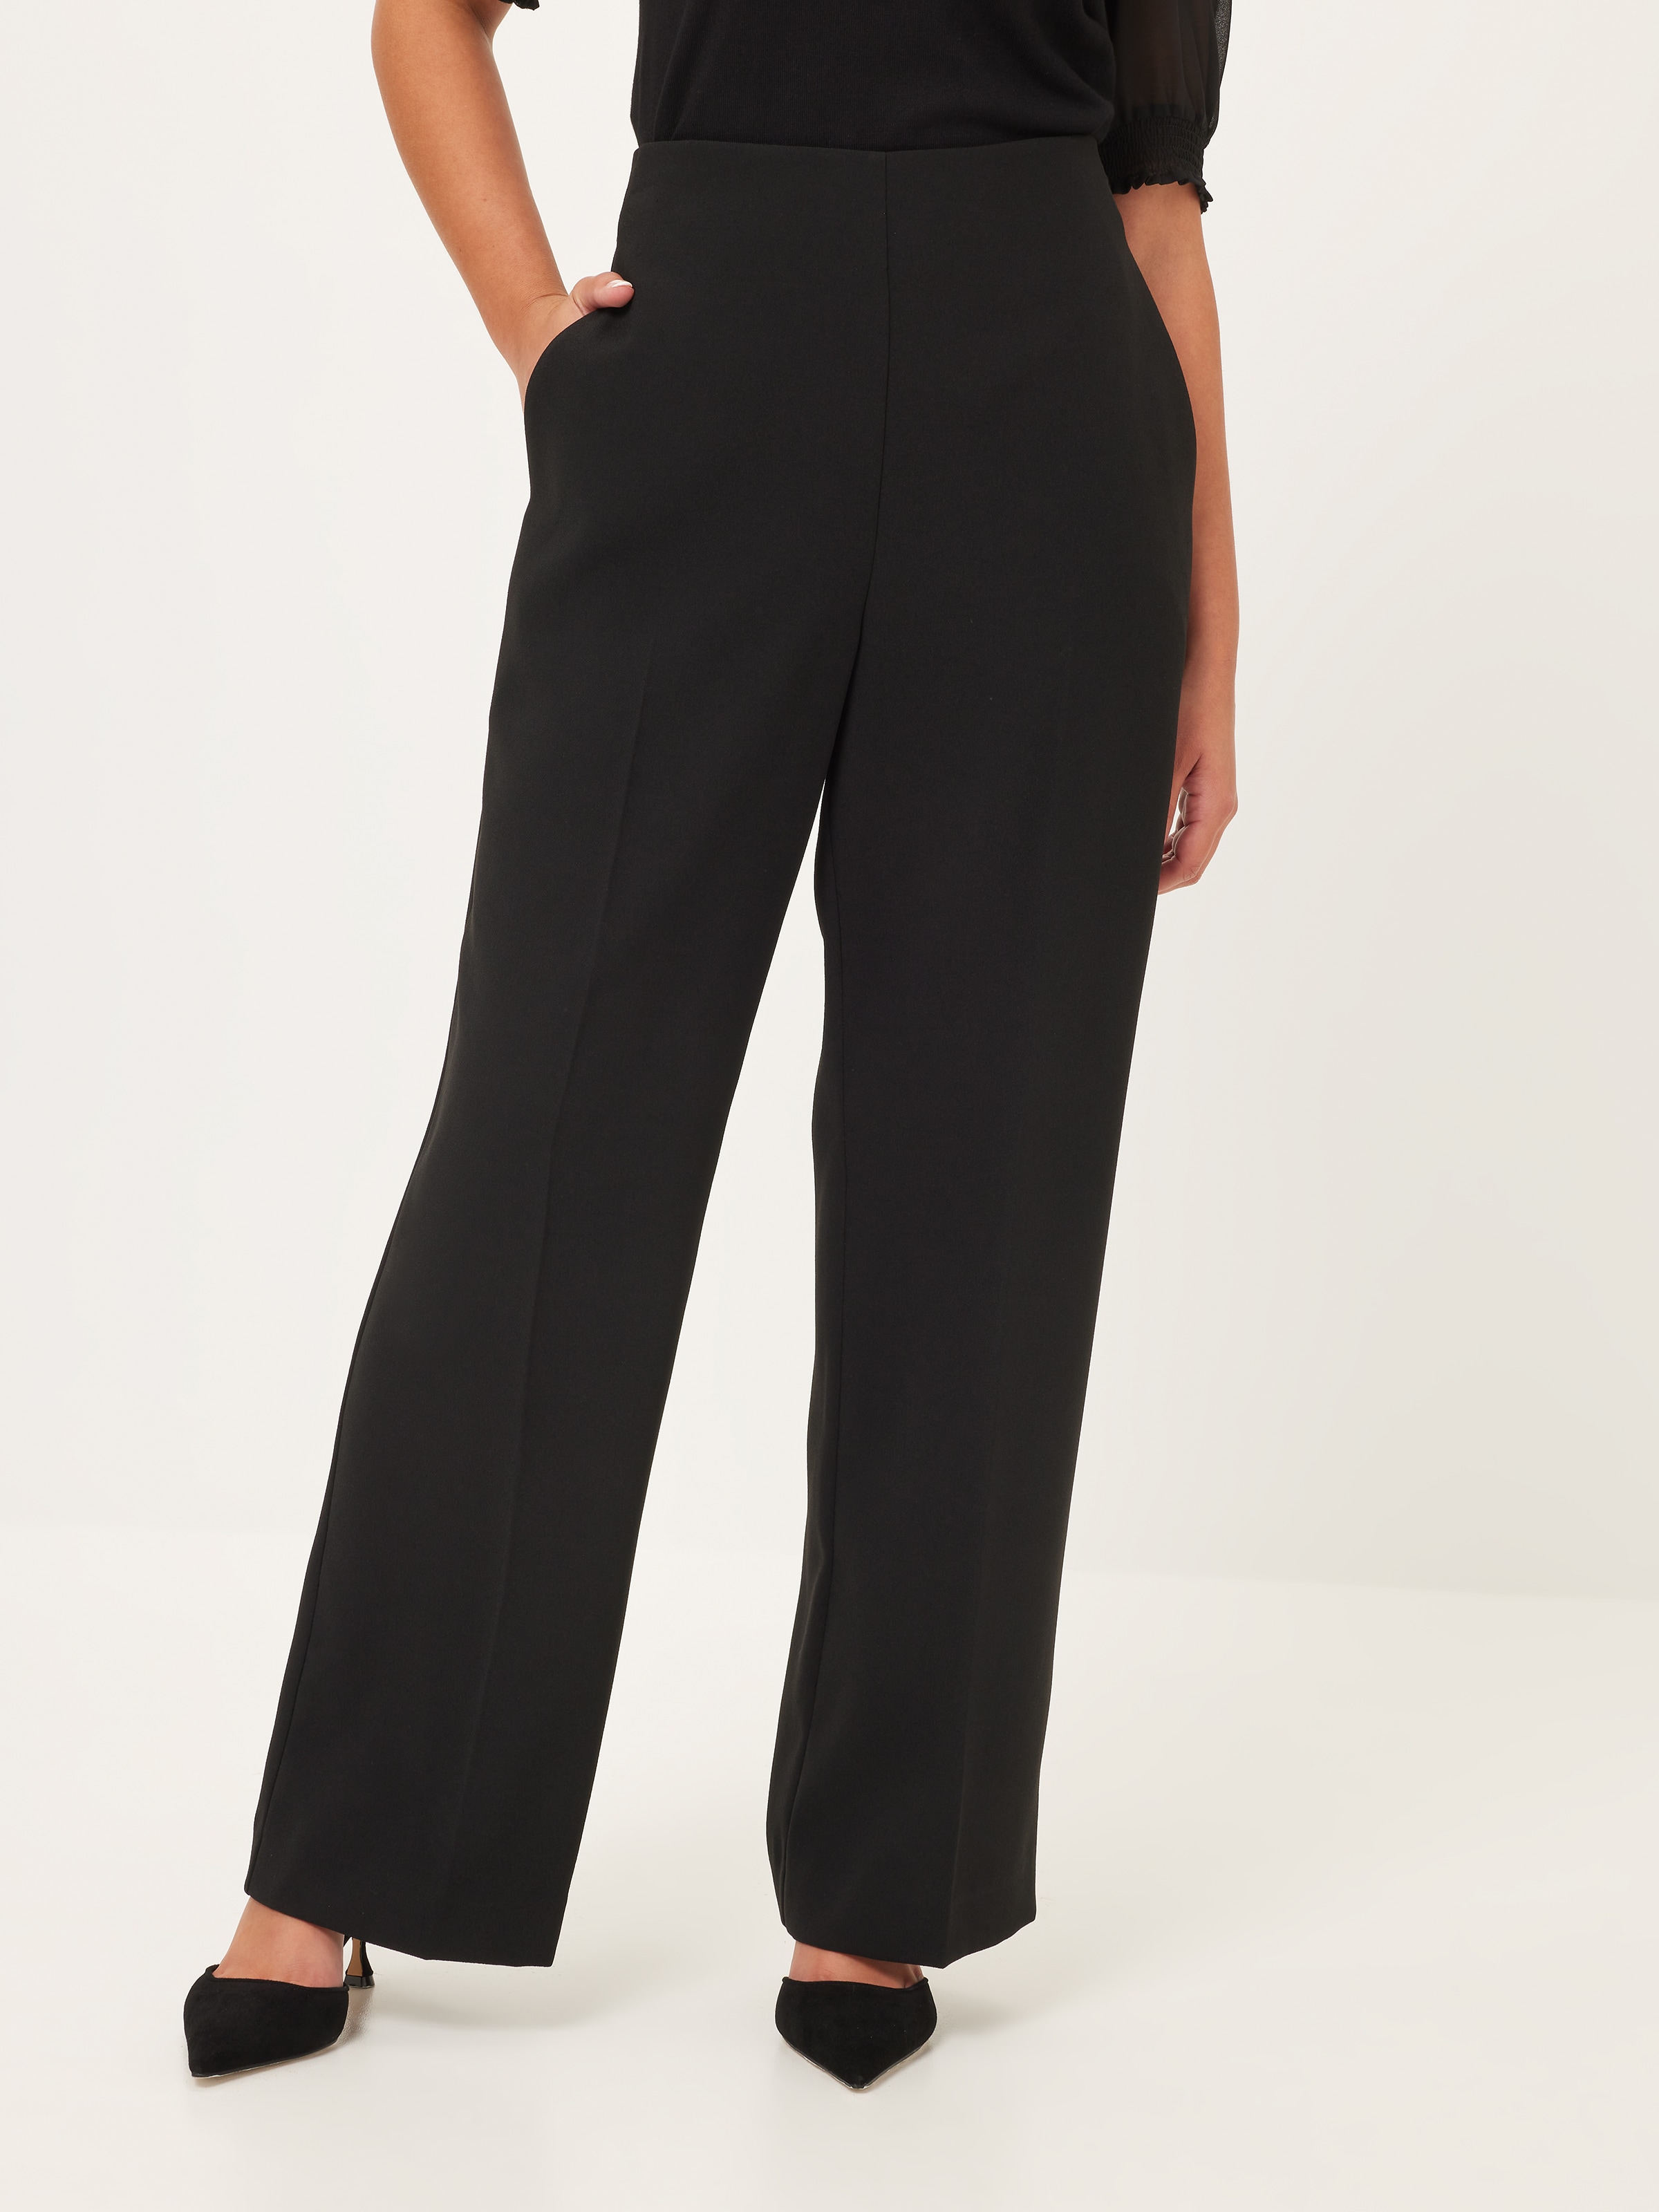 Wholesale Petite Women's +40 Resistance Black Pants for your shop – Faire UK